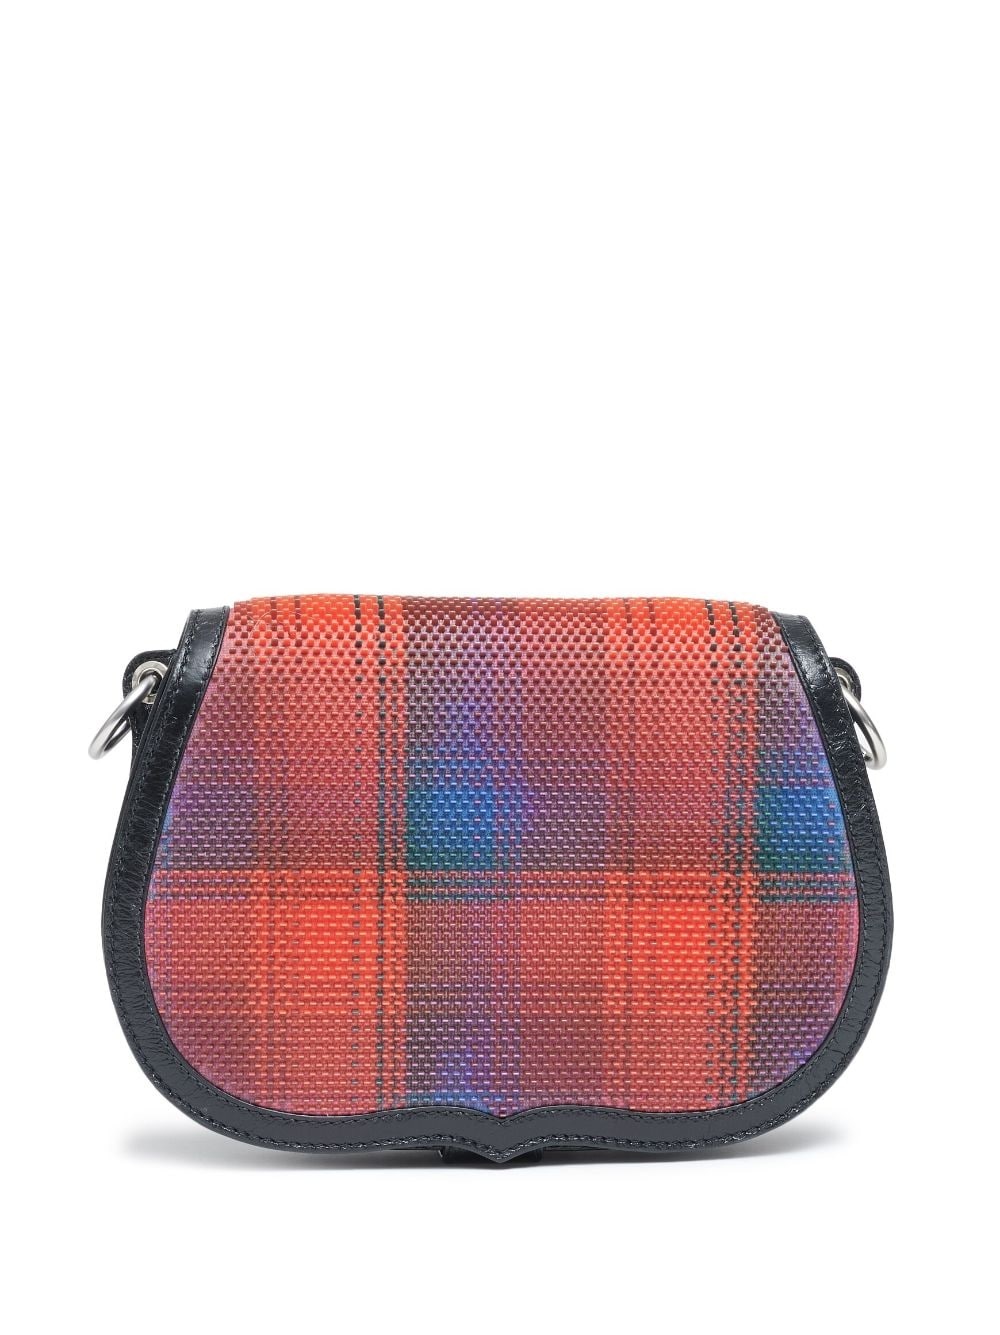 grid-pattern leather shoulder bag - 1